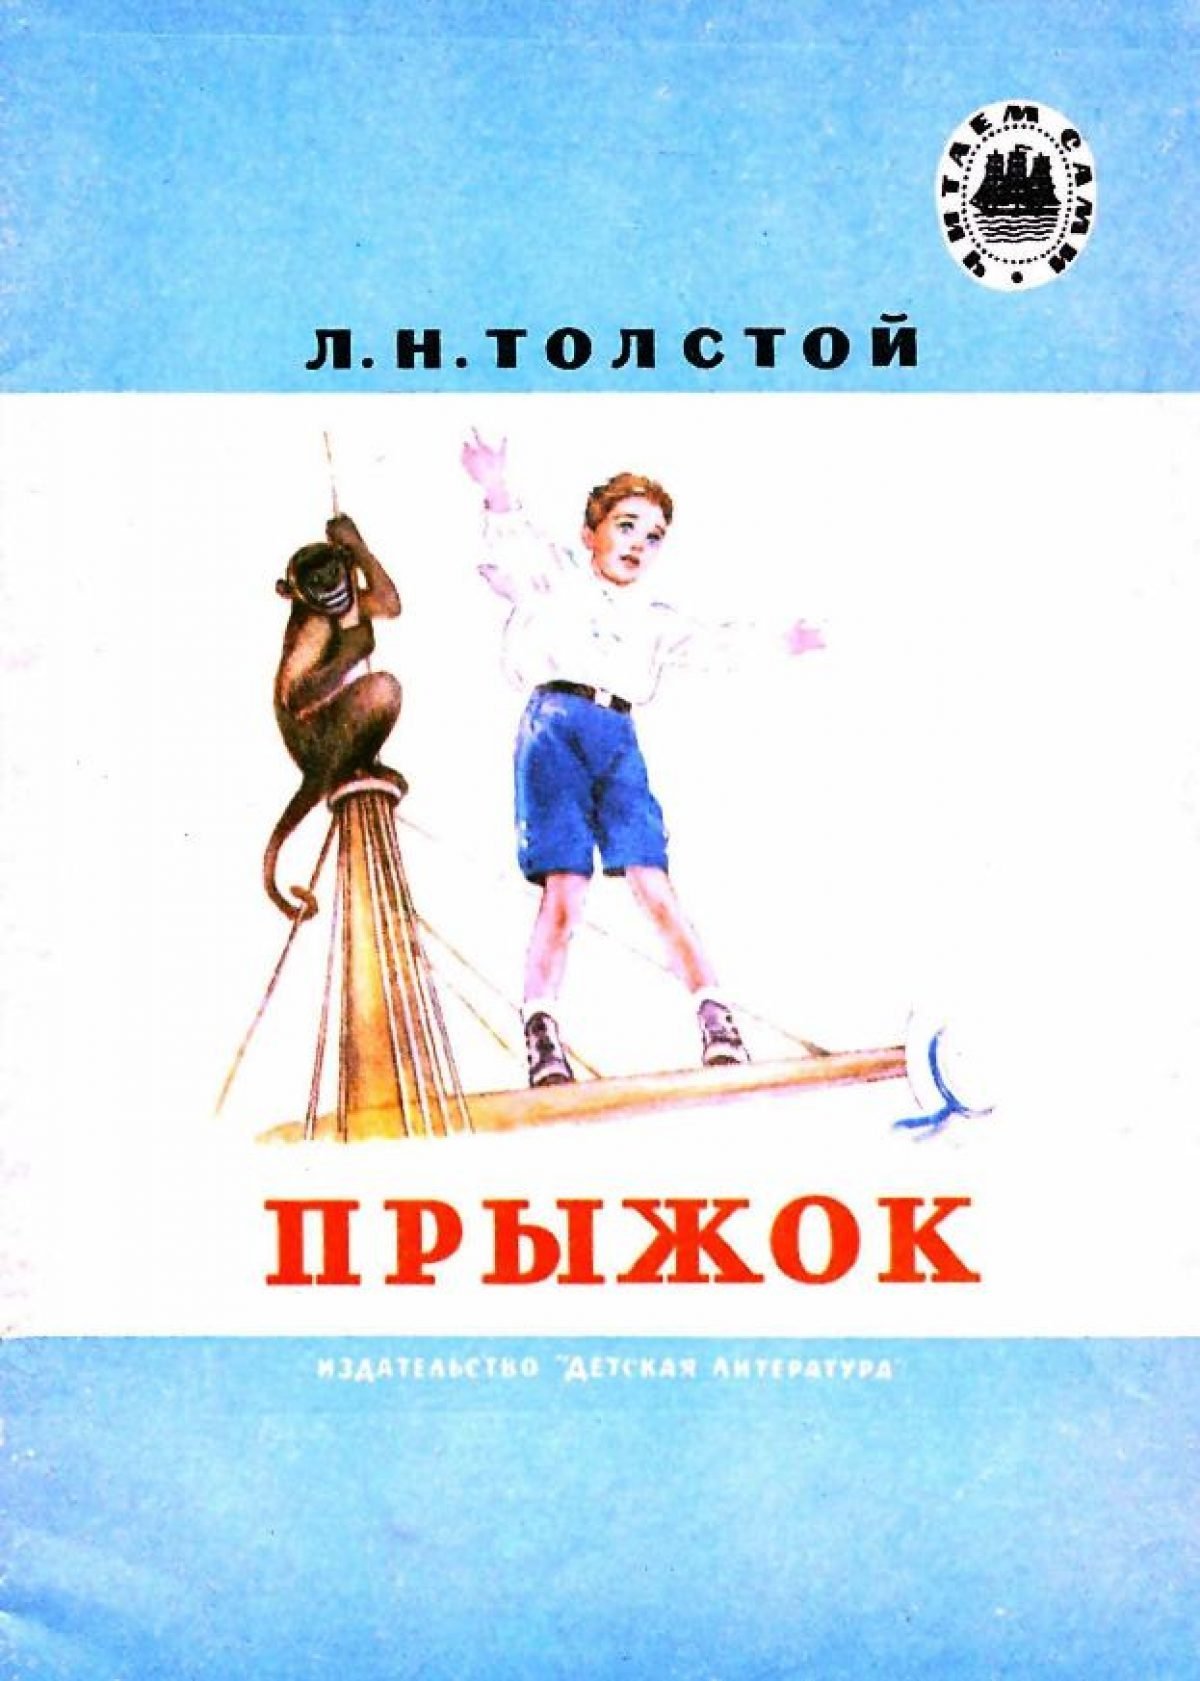 Иллюстрации к рассказу прыжок л.н Толстого